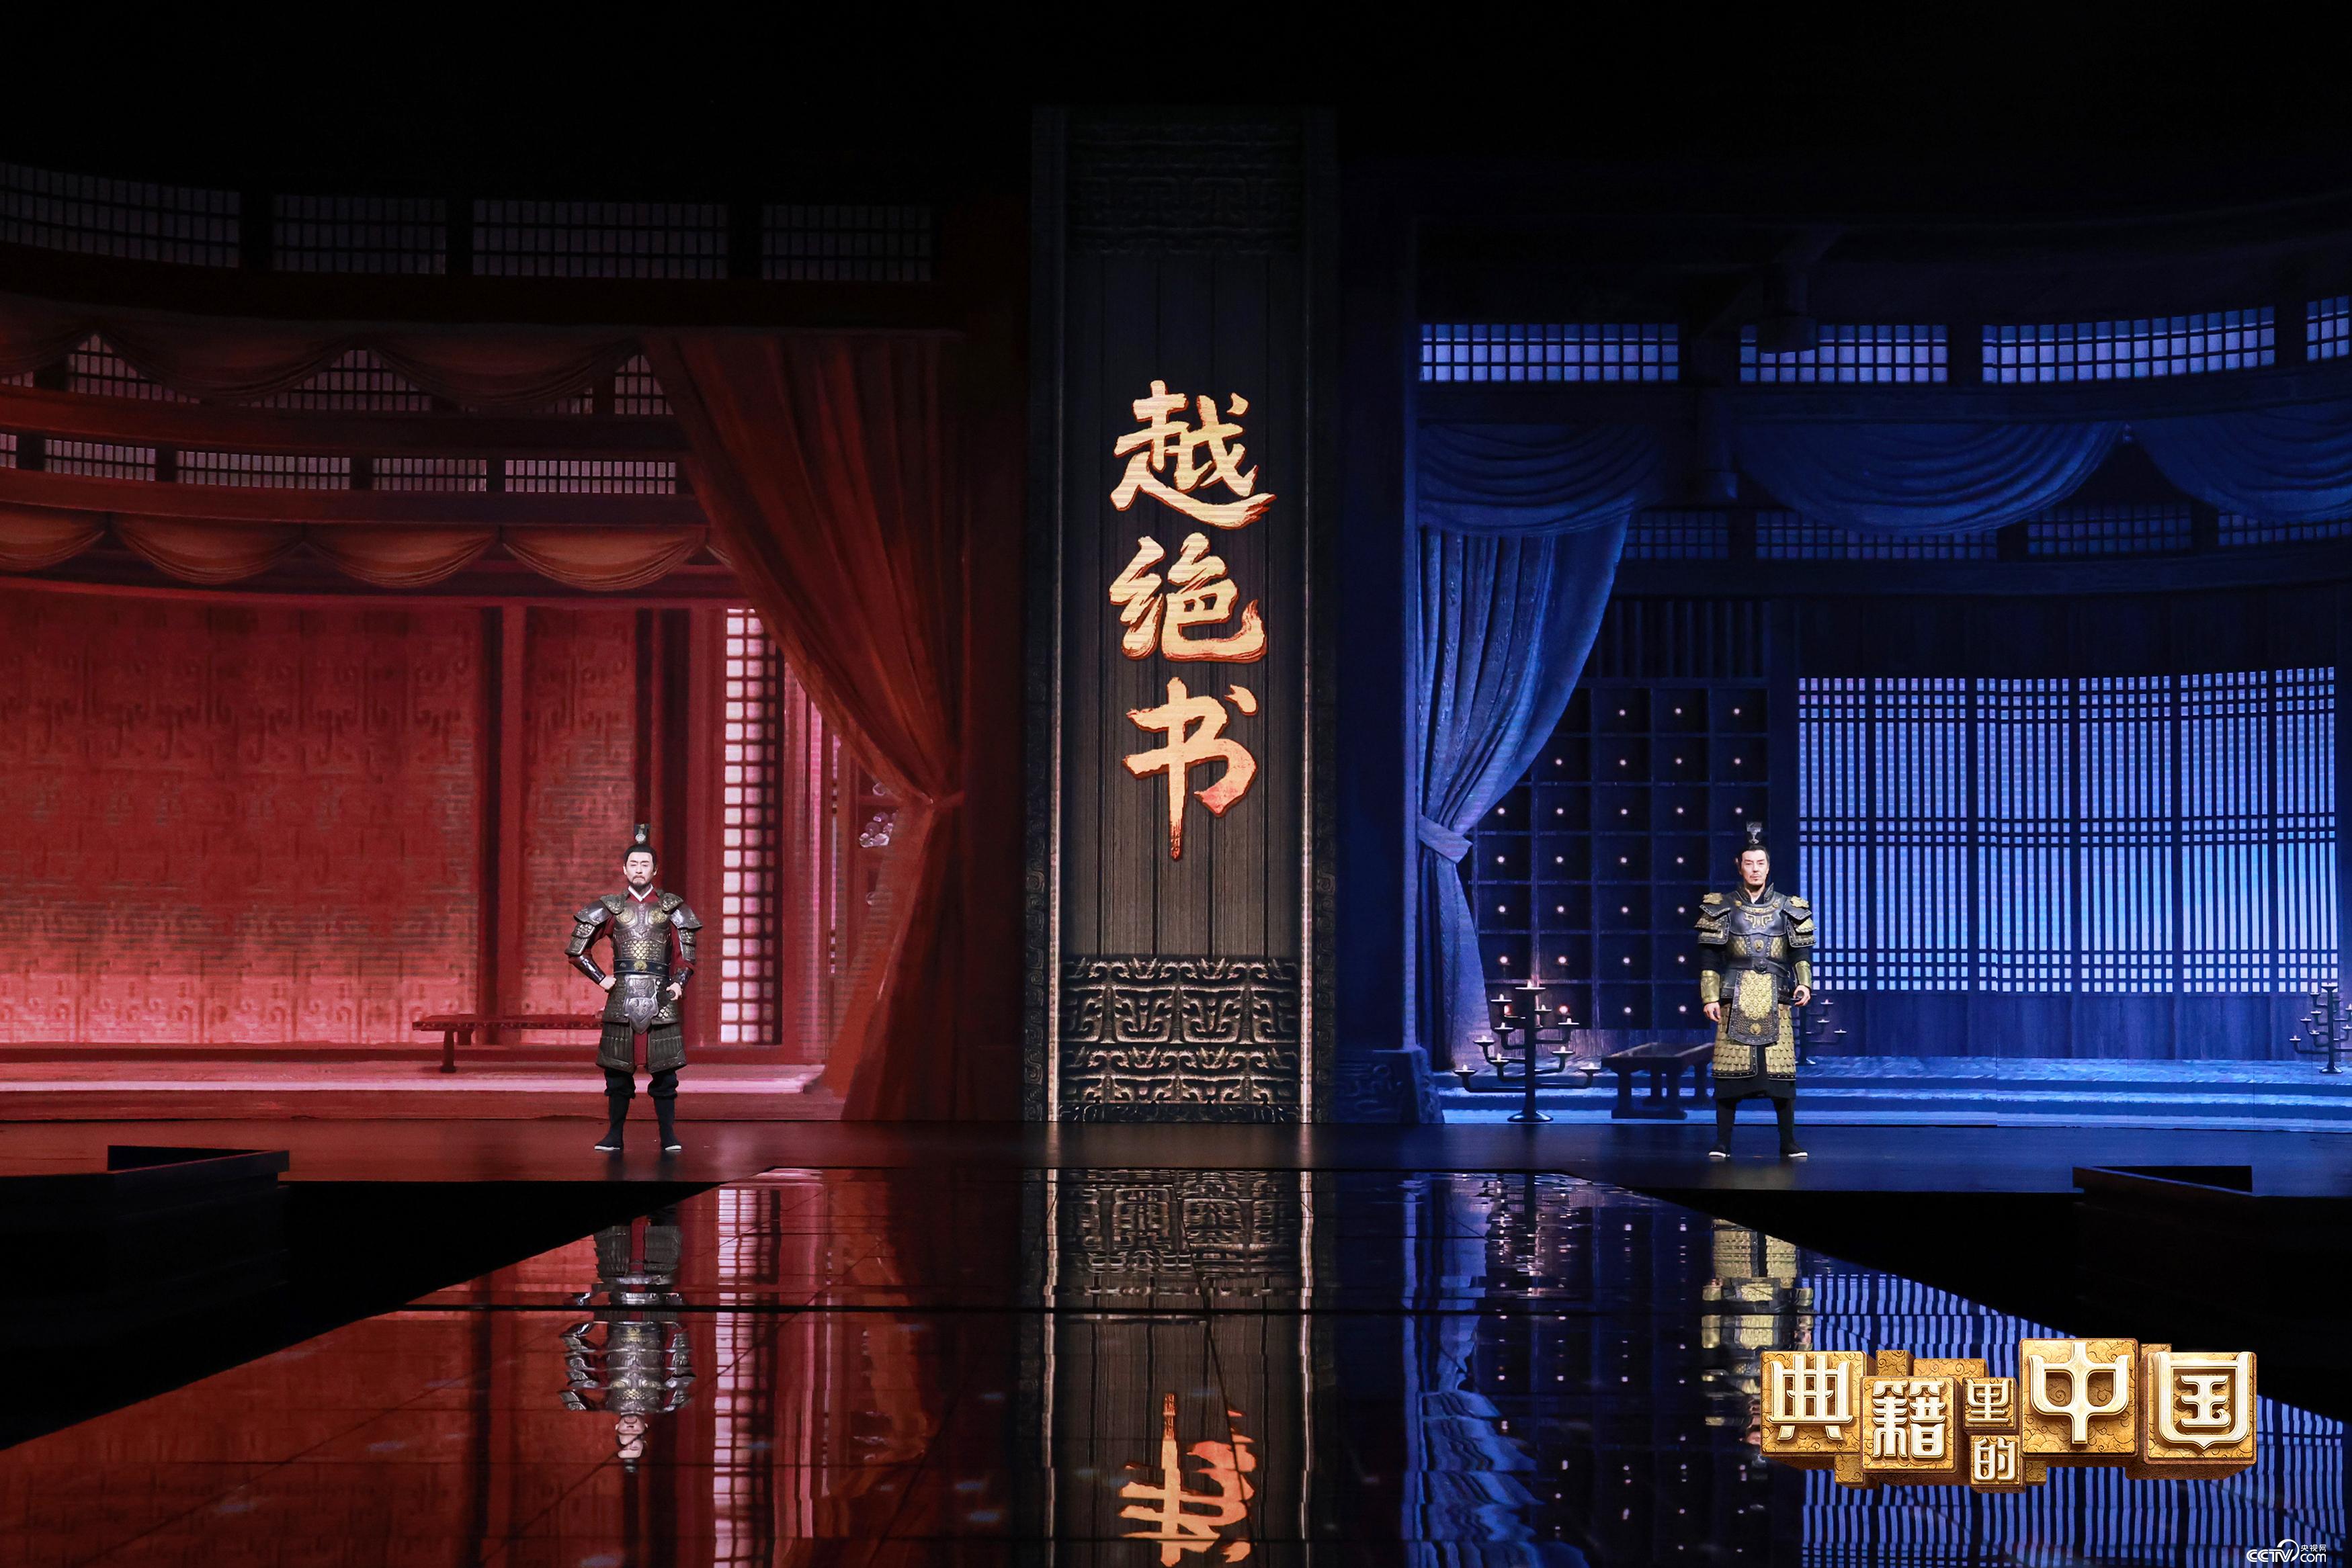 撒贝宁跨时空对话明代学者杨慎 《典籍里的中国2》越王勾践上演“绝地反击”